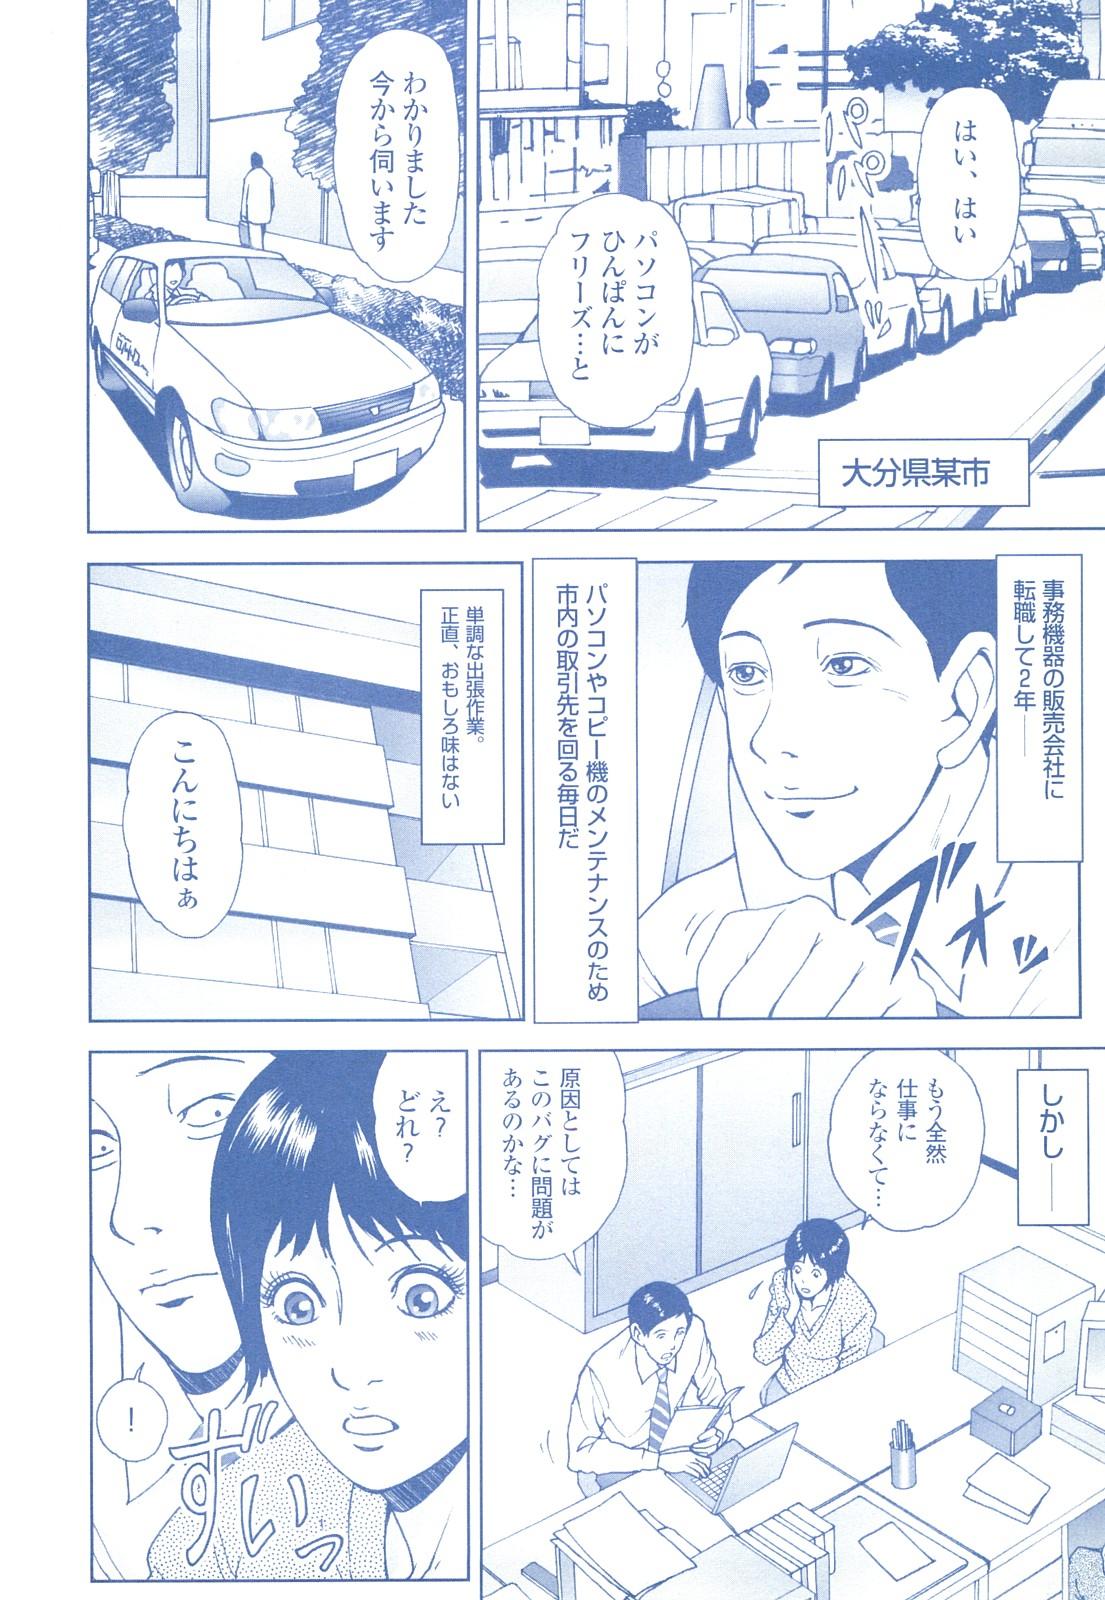 コミック裏モノJAPAN Vol.18 今井のりたつスペシャル号 227